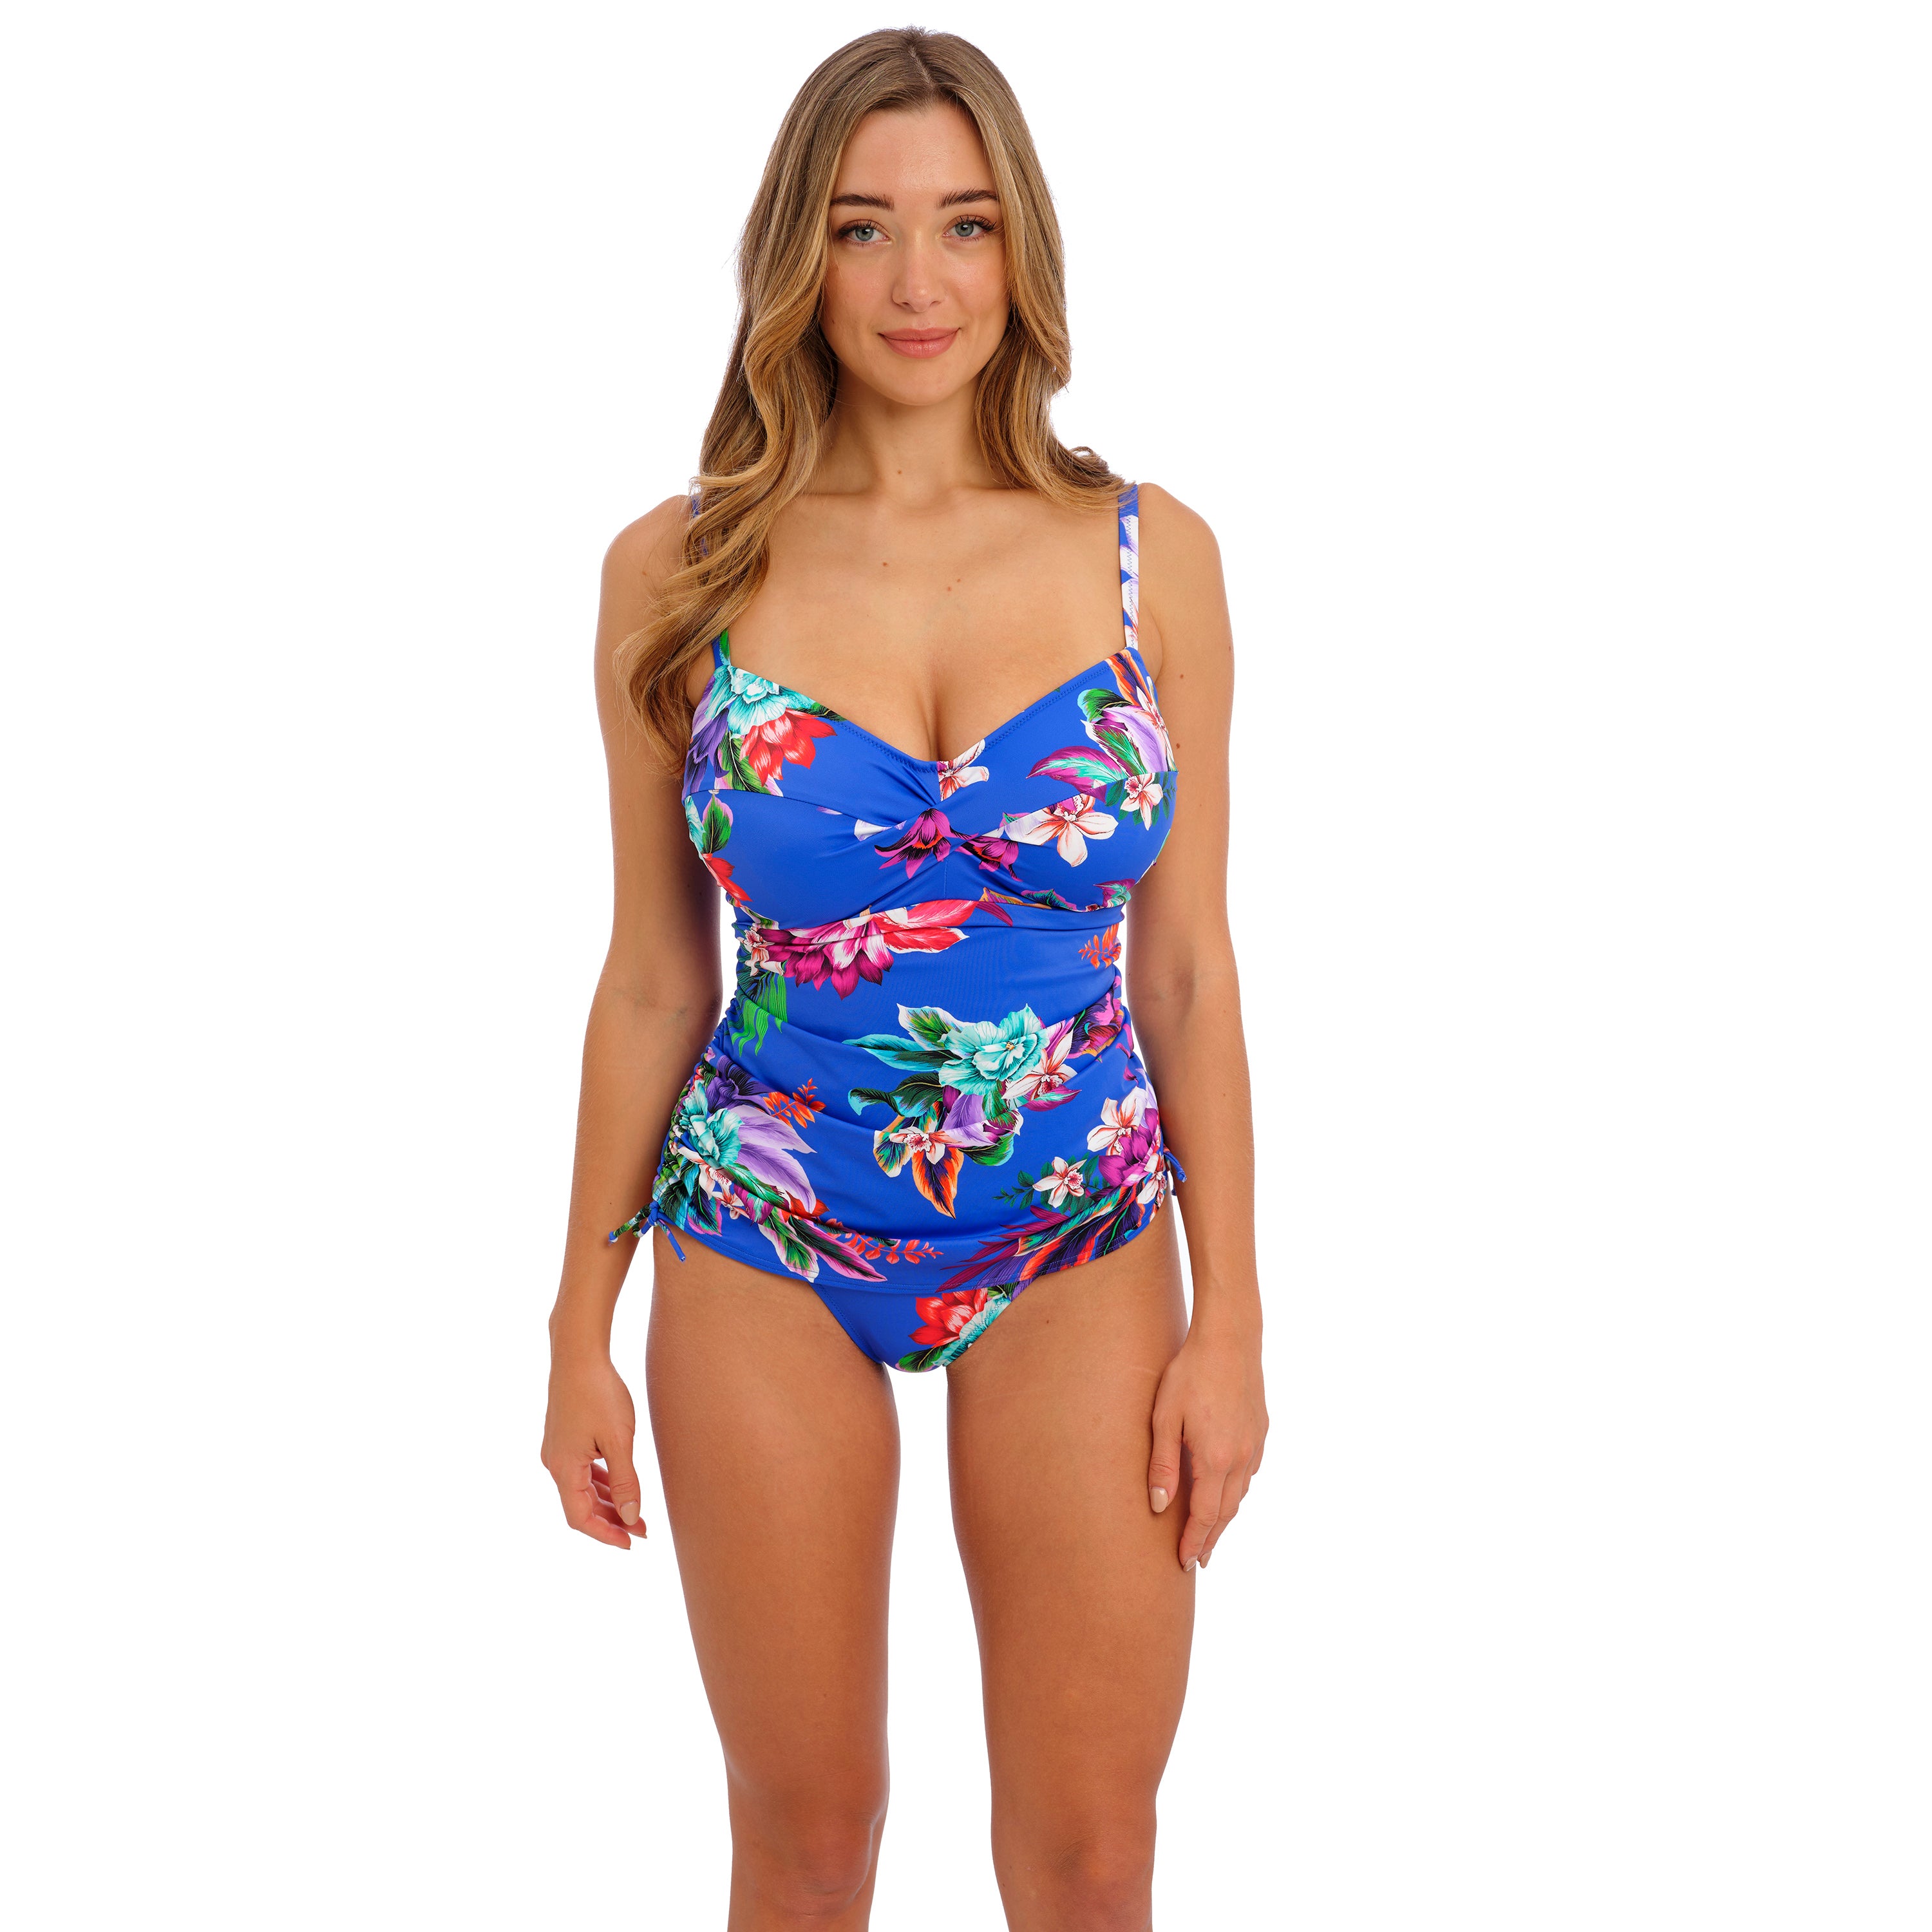 34H Swimwear - Swimsuits, Bikinis & Tankinis